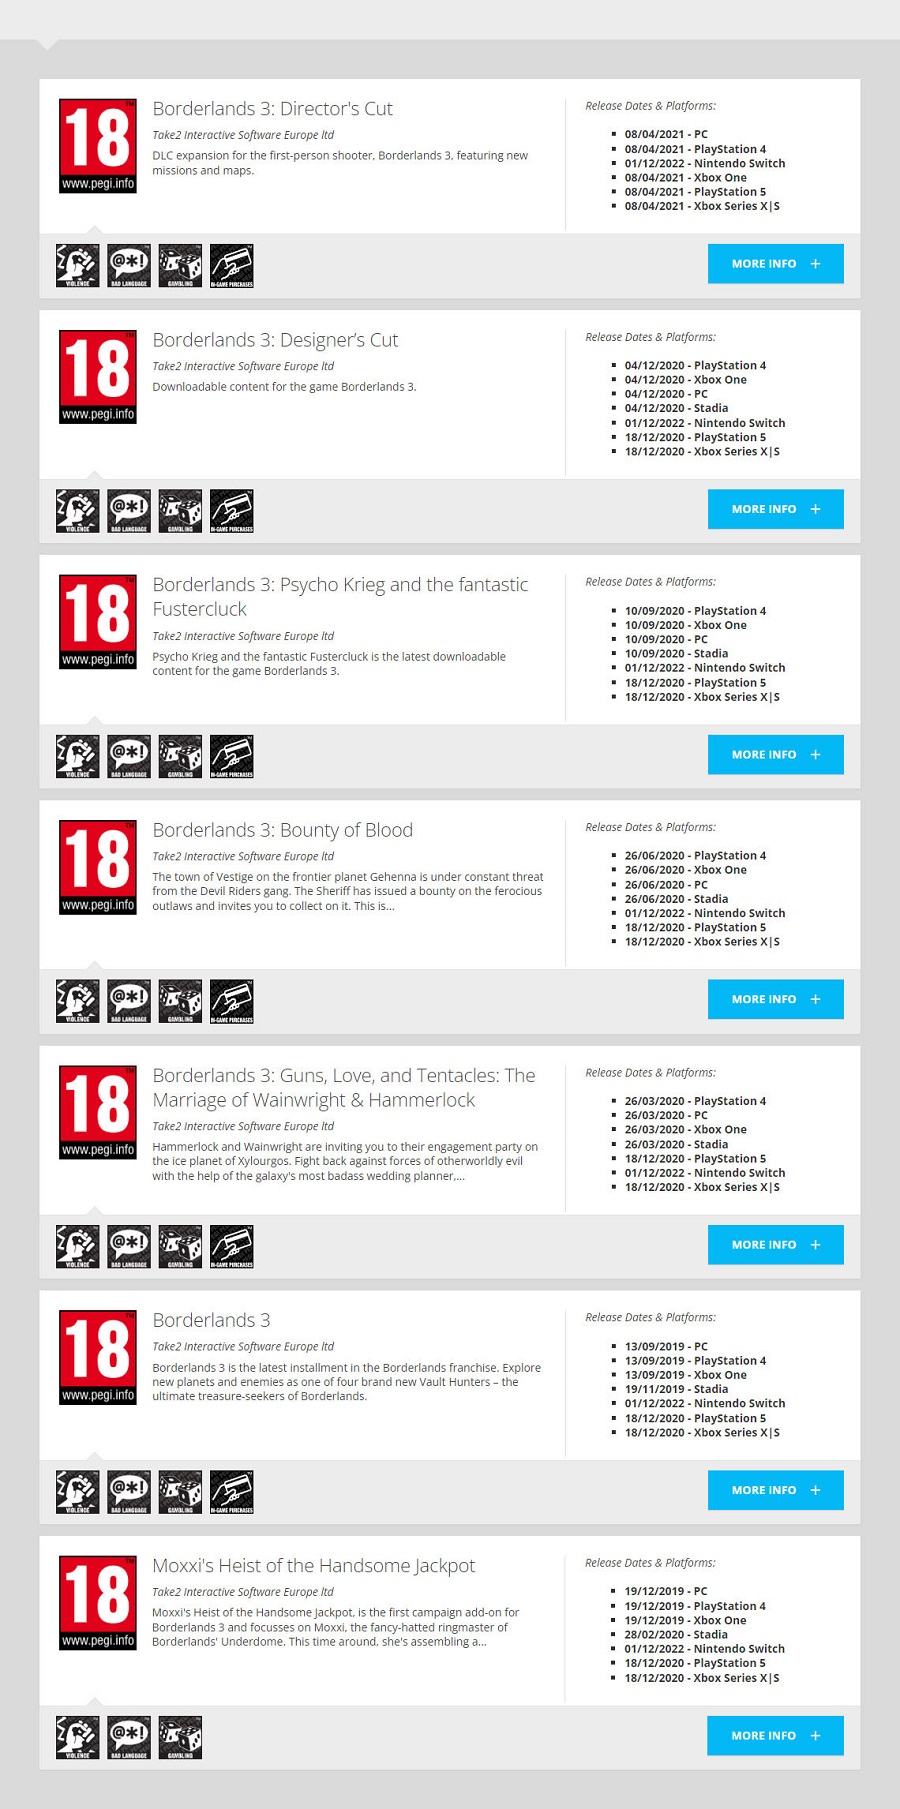 Annuncio in arrivo? La versione per Nintendo Switch di Borderlands 3 ha ricevuto una classificazione per età dalla Commissione Europea PEGI-2